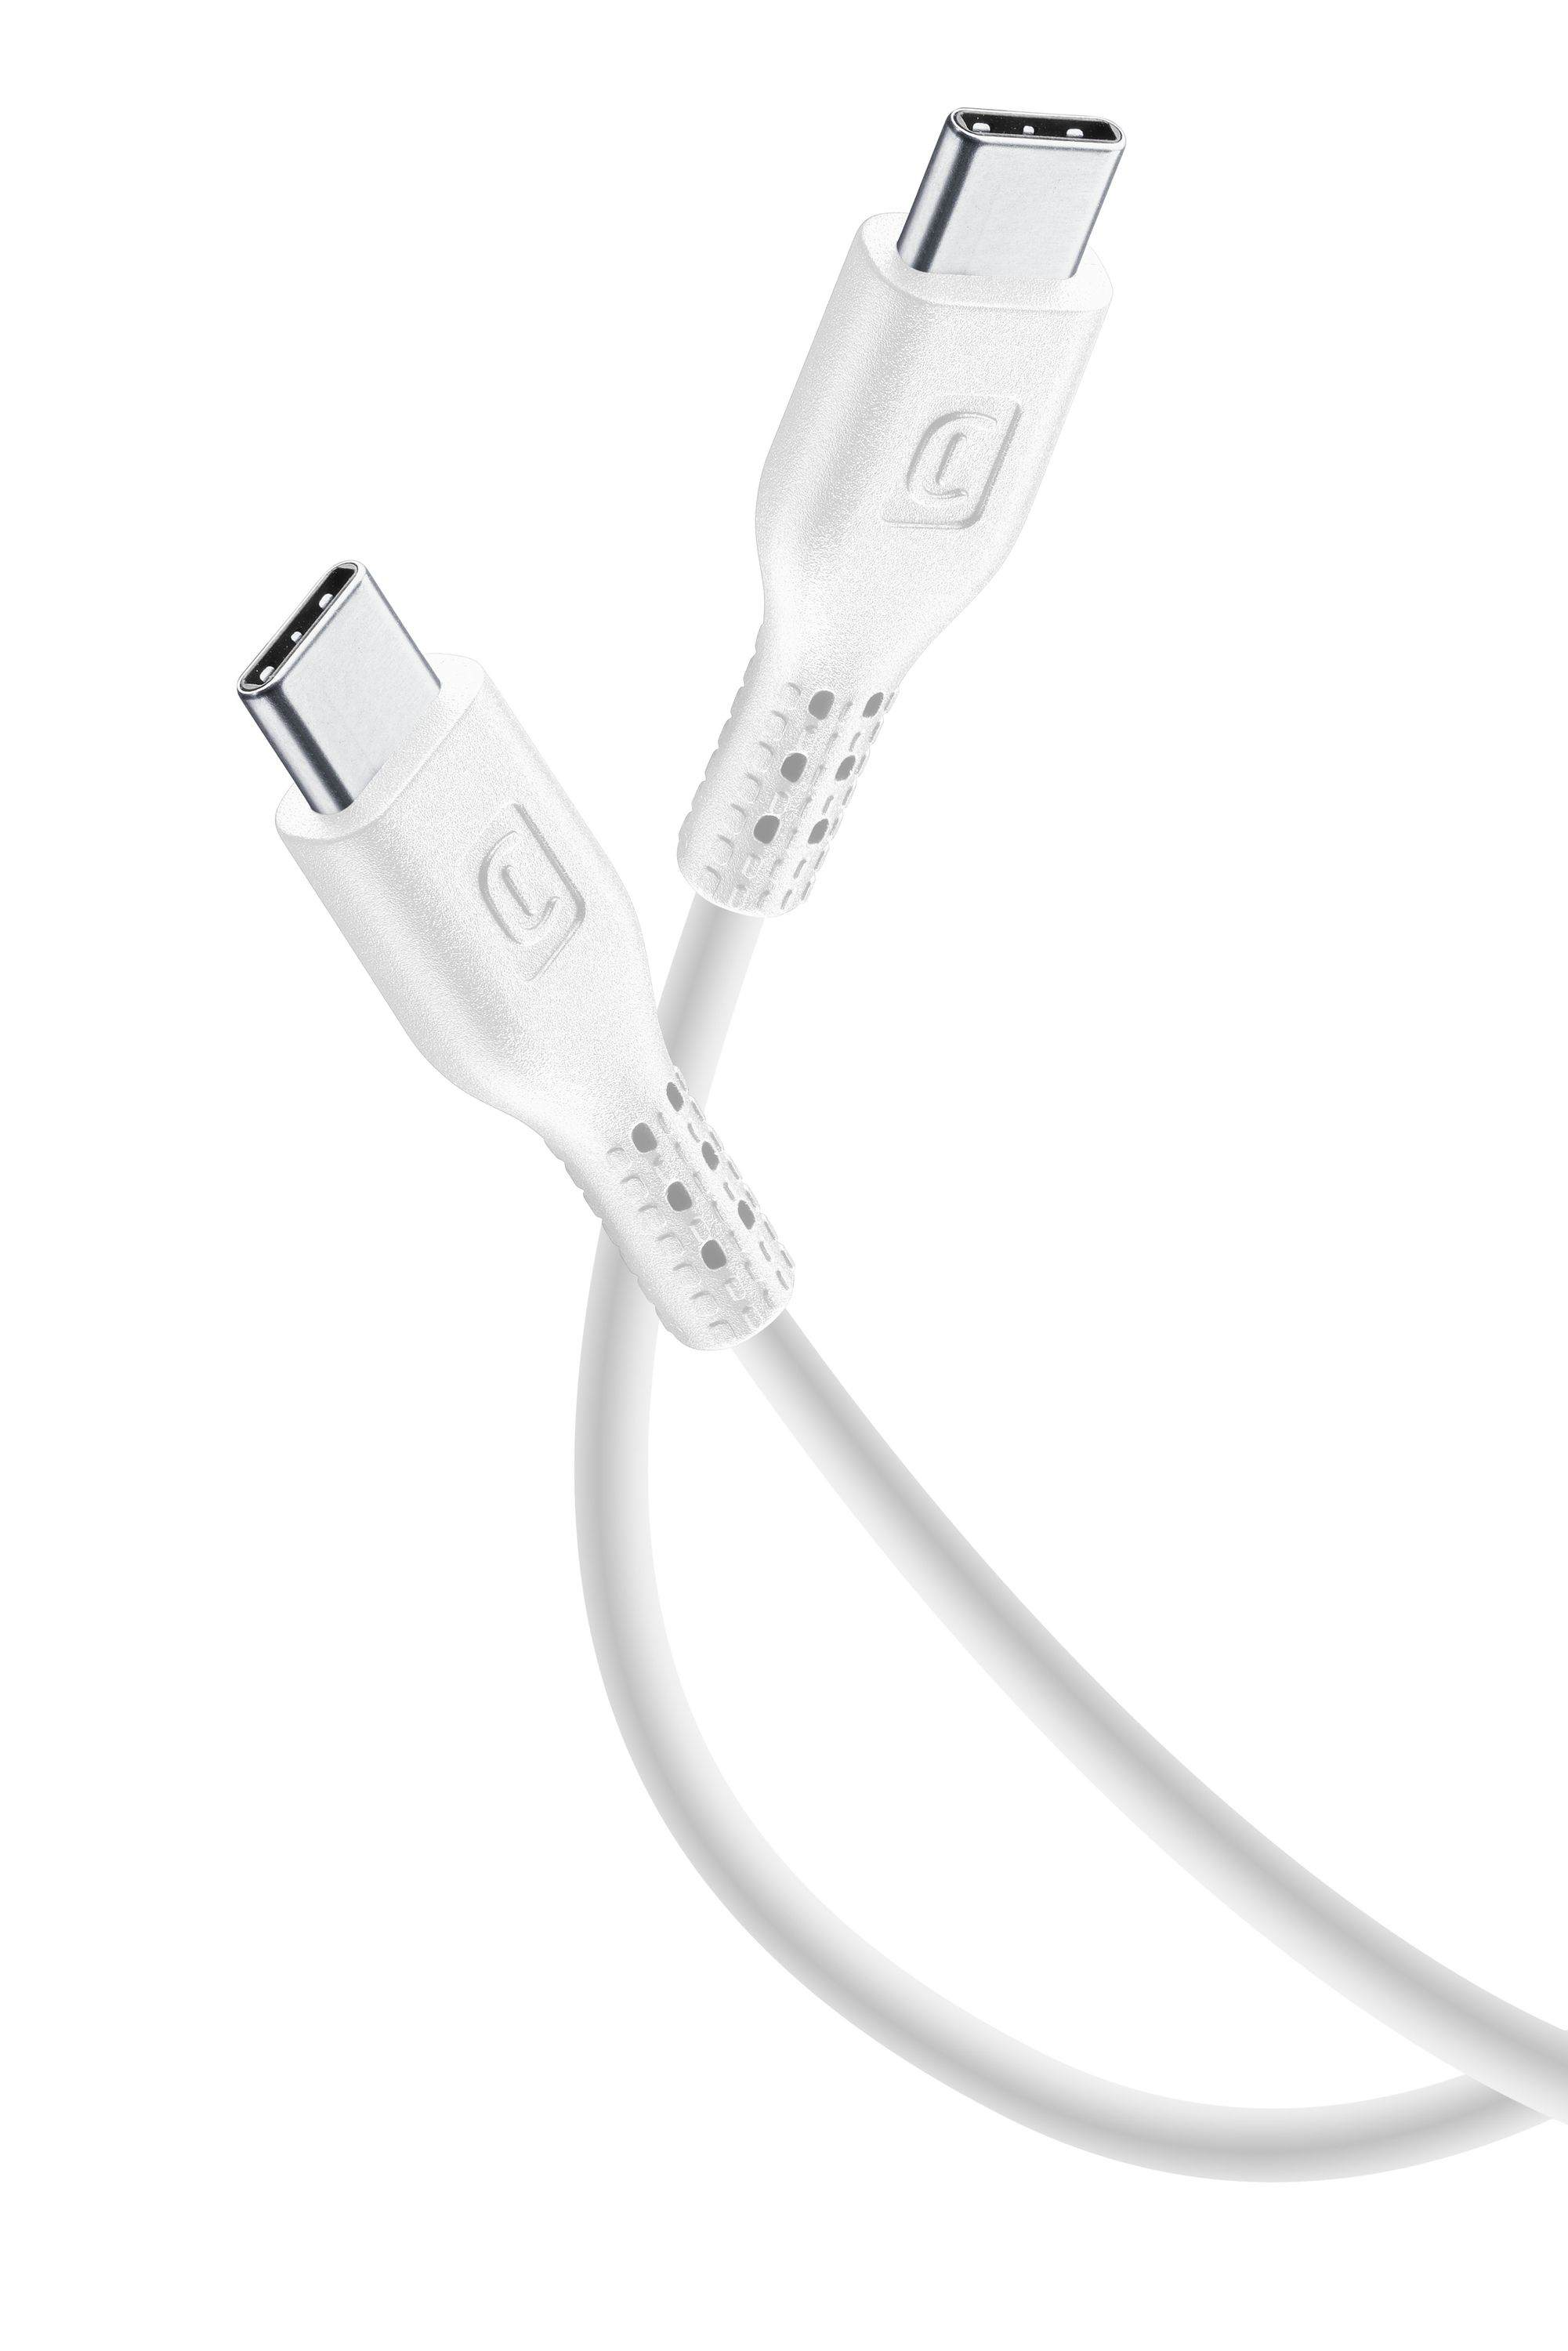 Power Cable 120cm - USB-C to USB-C, Câbles